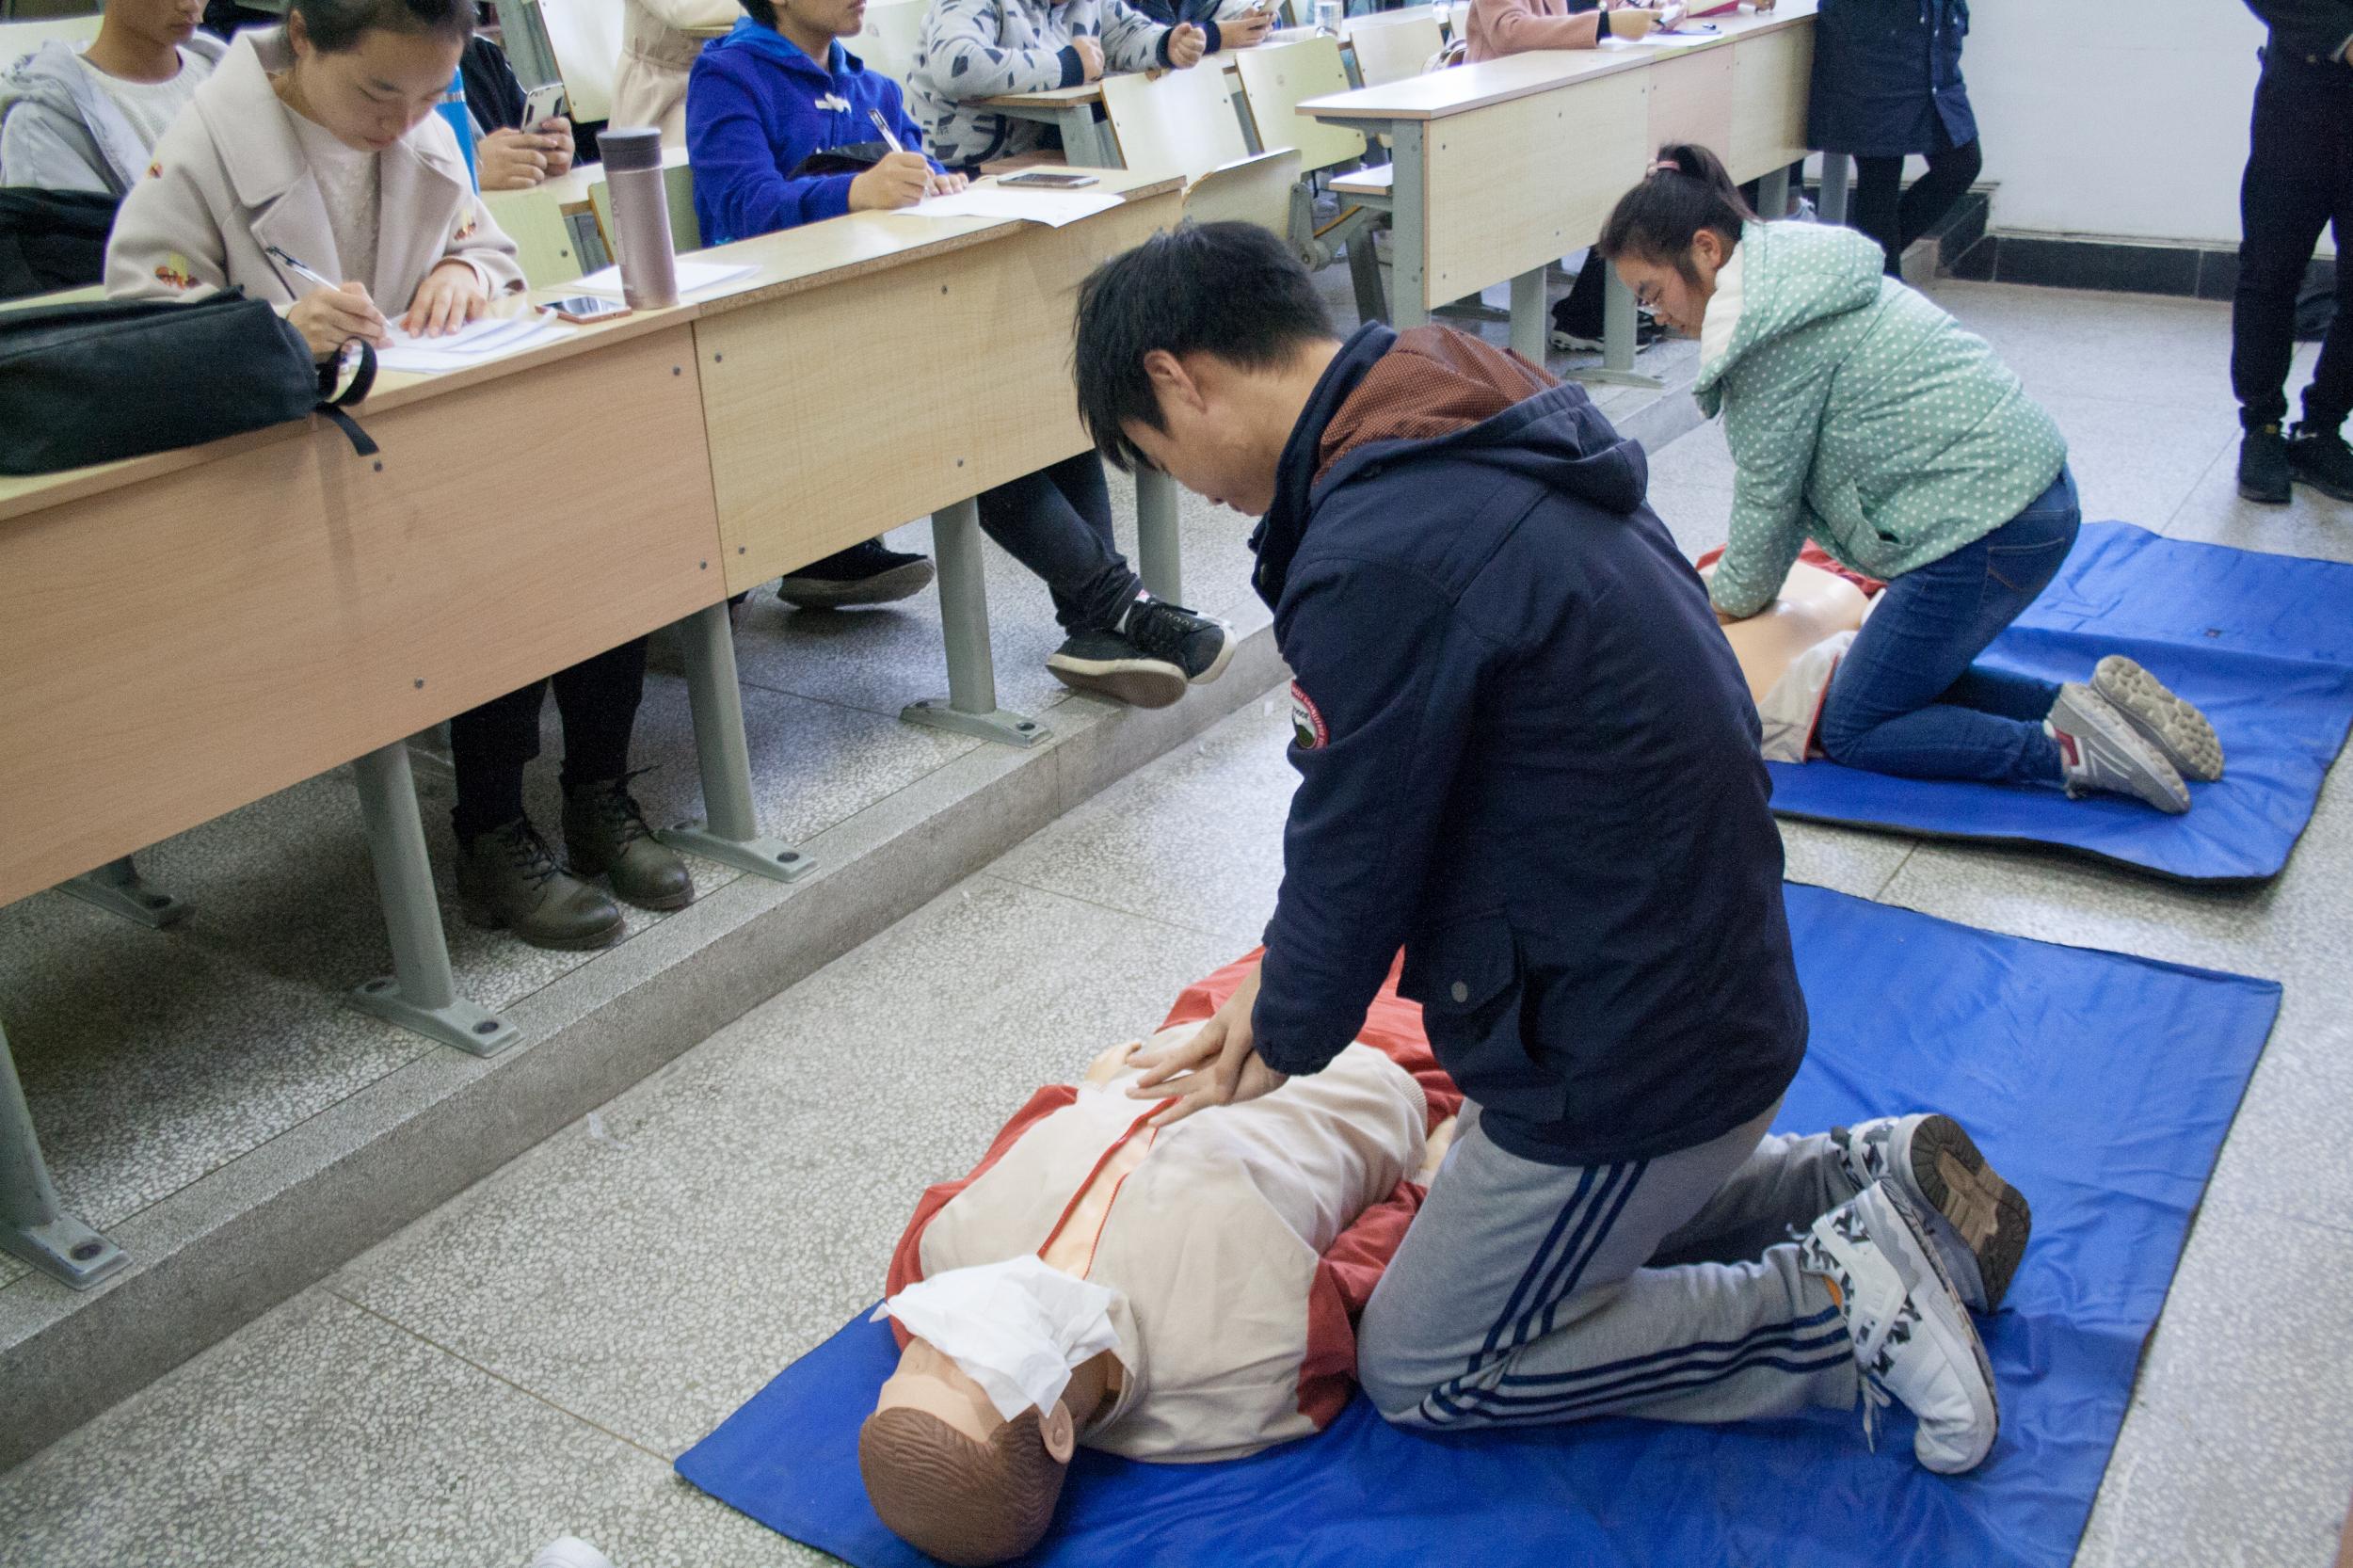 让每个人都成为“急救员” 温州目前有355.2万人次参加应急救护培训